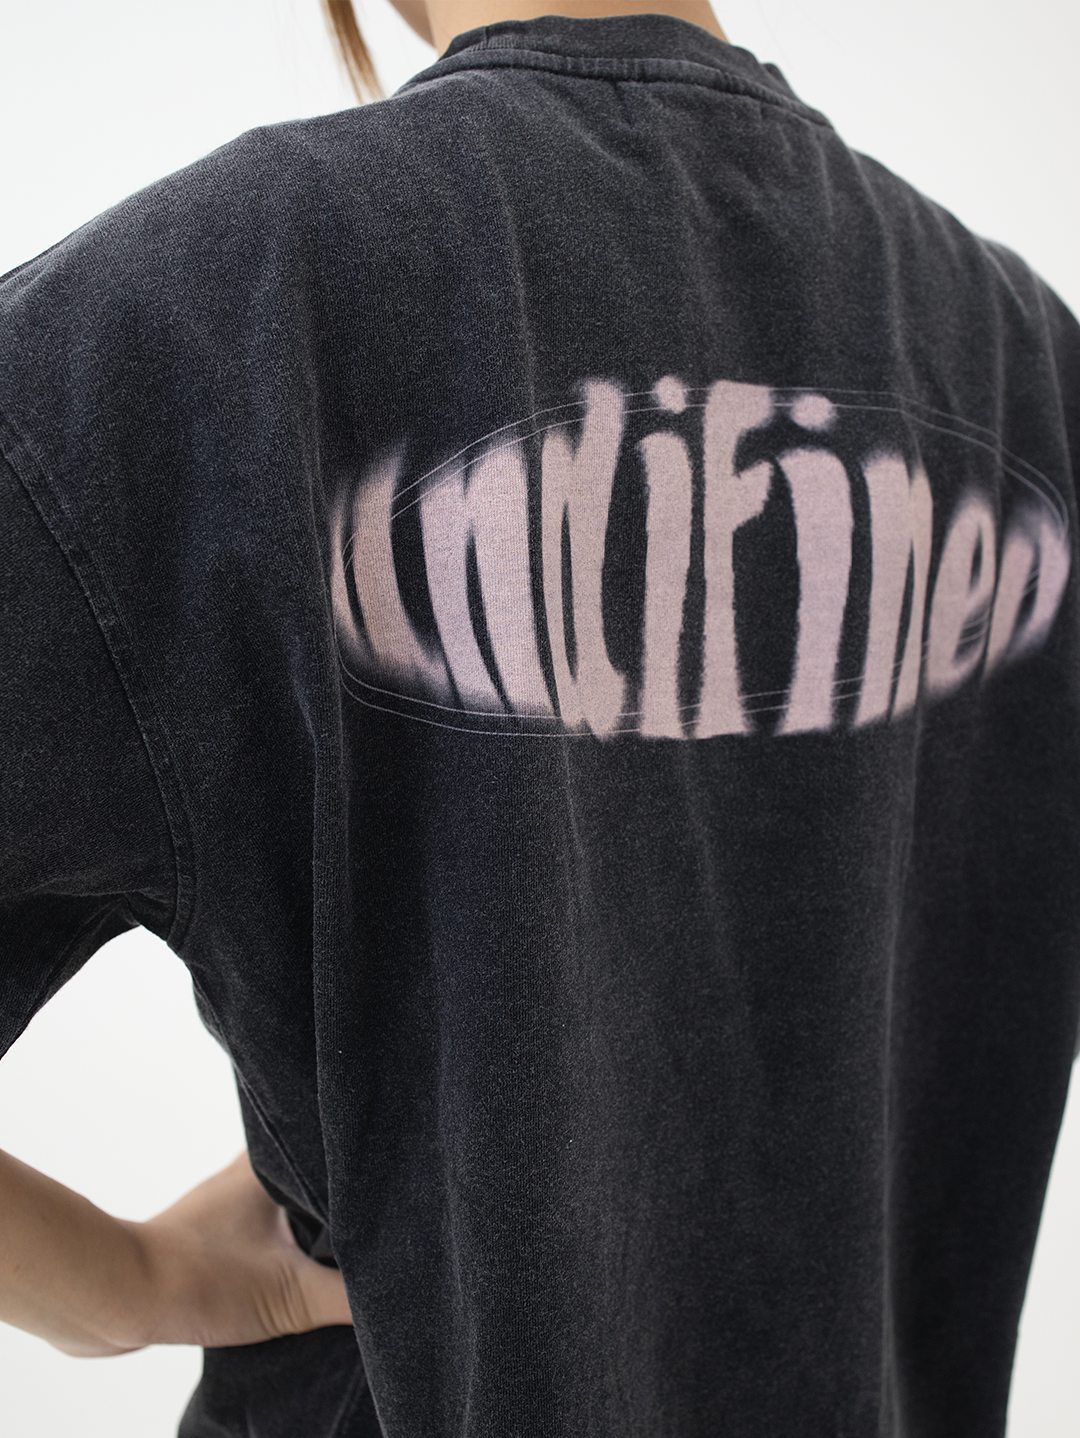 ASUNI Parfum Undifined Uni-Sex T-Shirt In Black